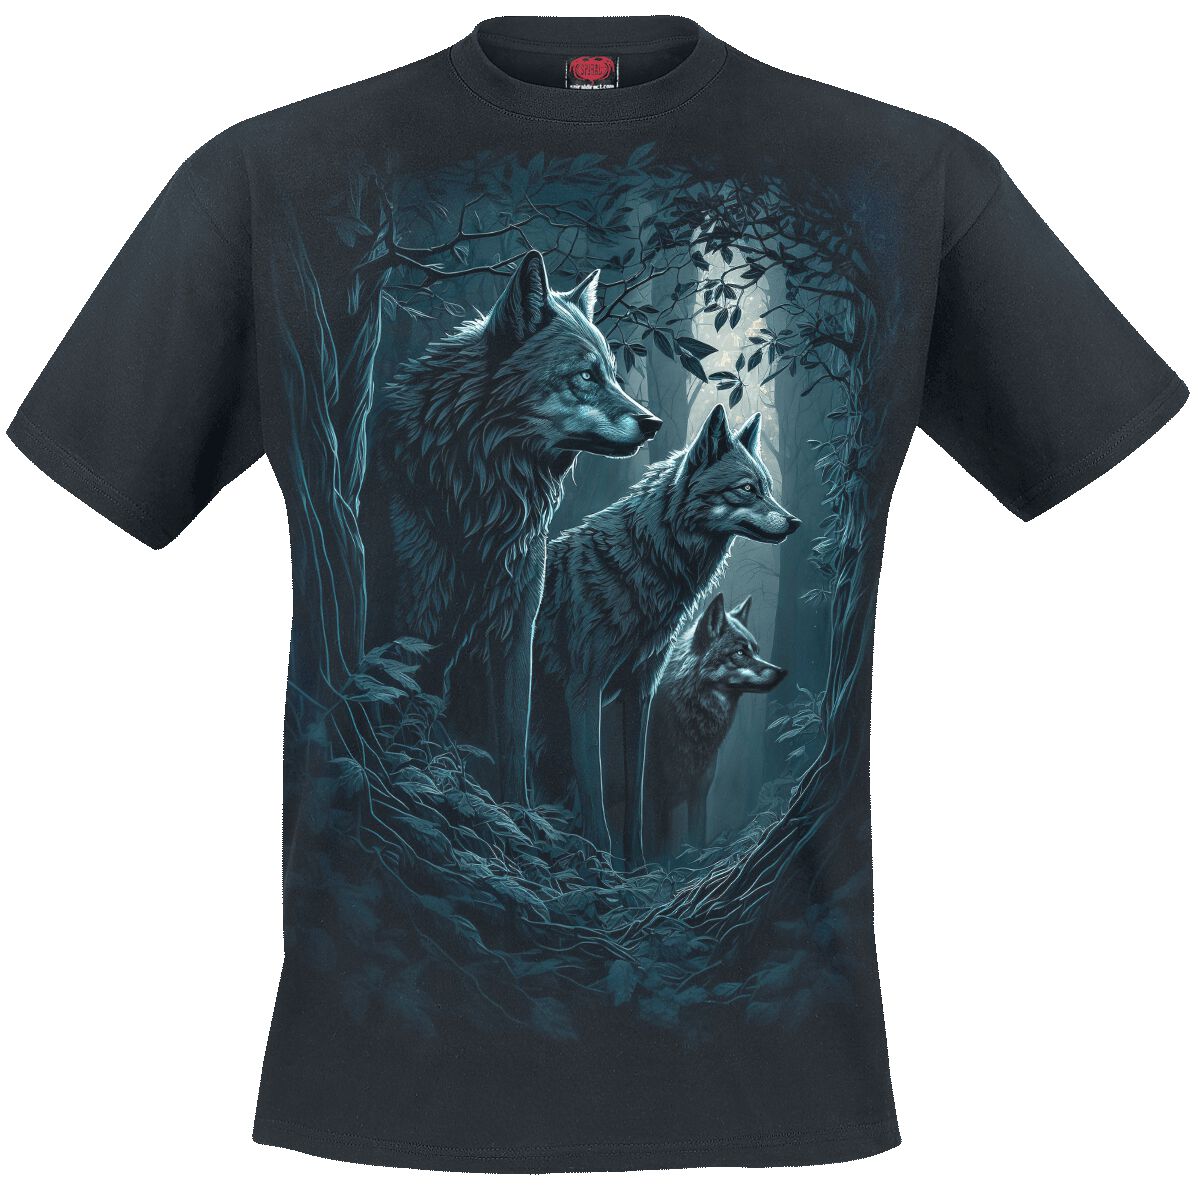 Spiral T-Shirt - Forest Guardians - S bis 4XL - für Männer - Größe XXL - schwarz